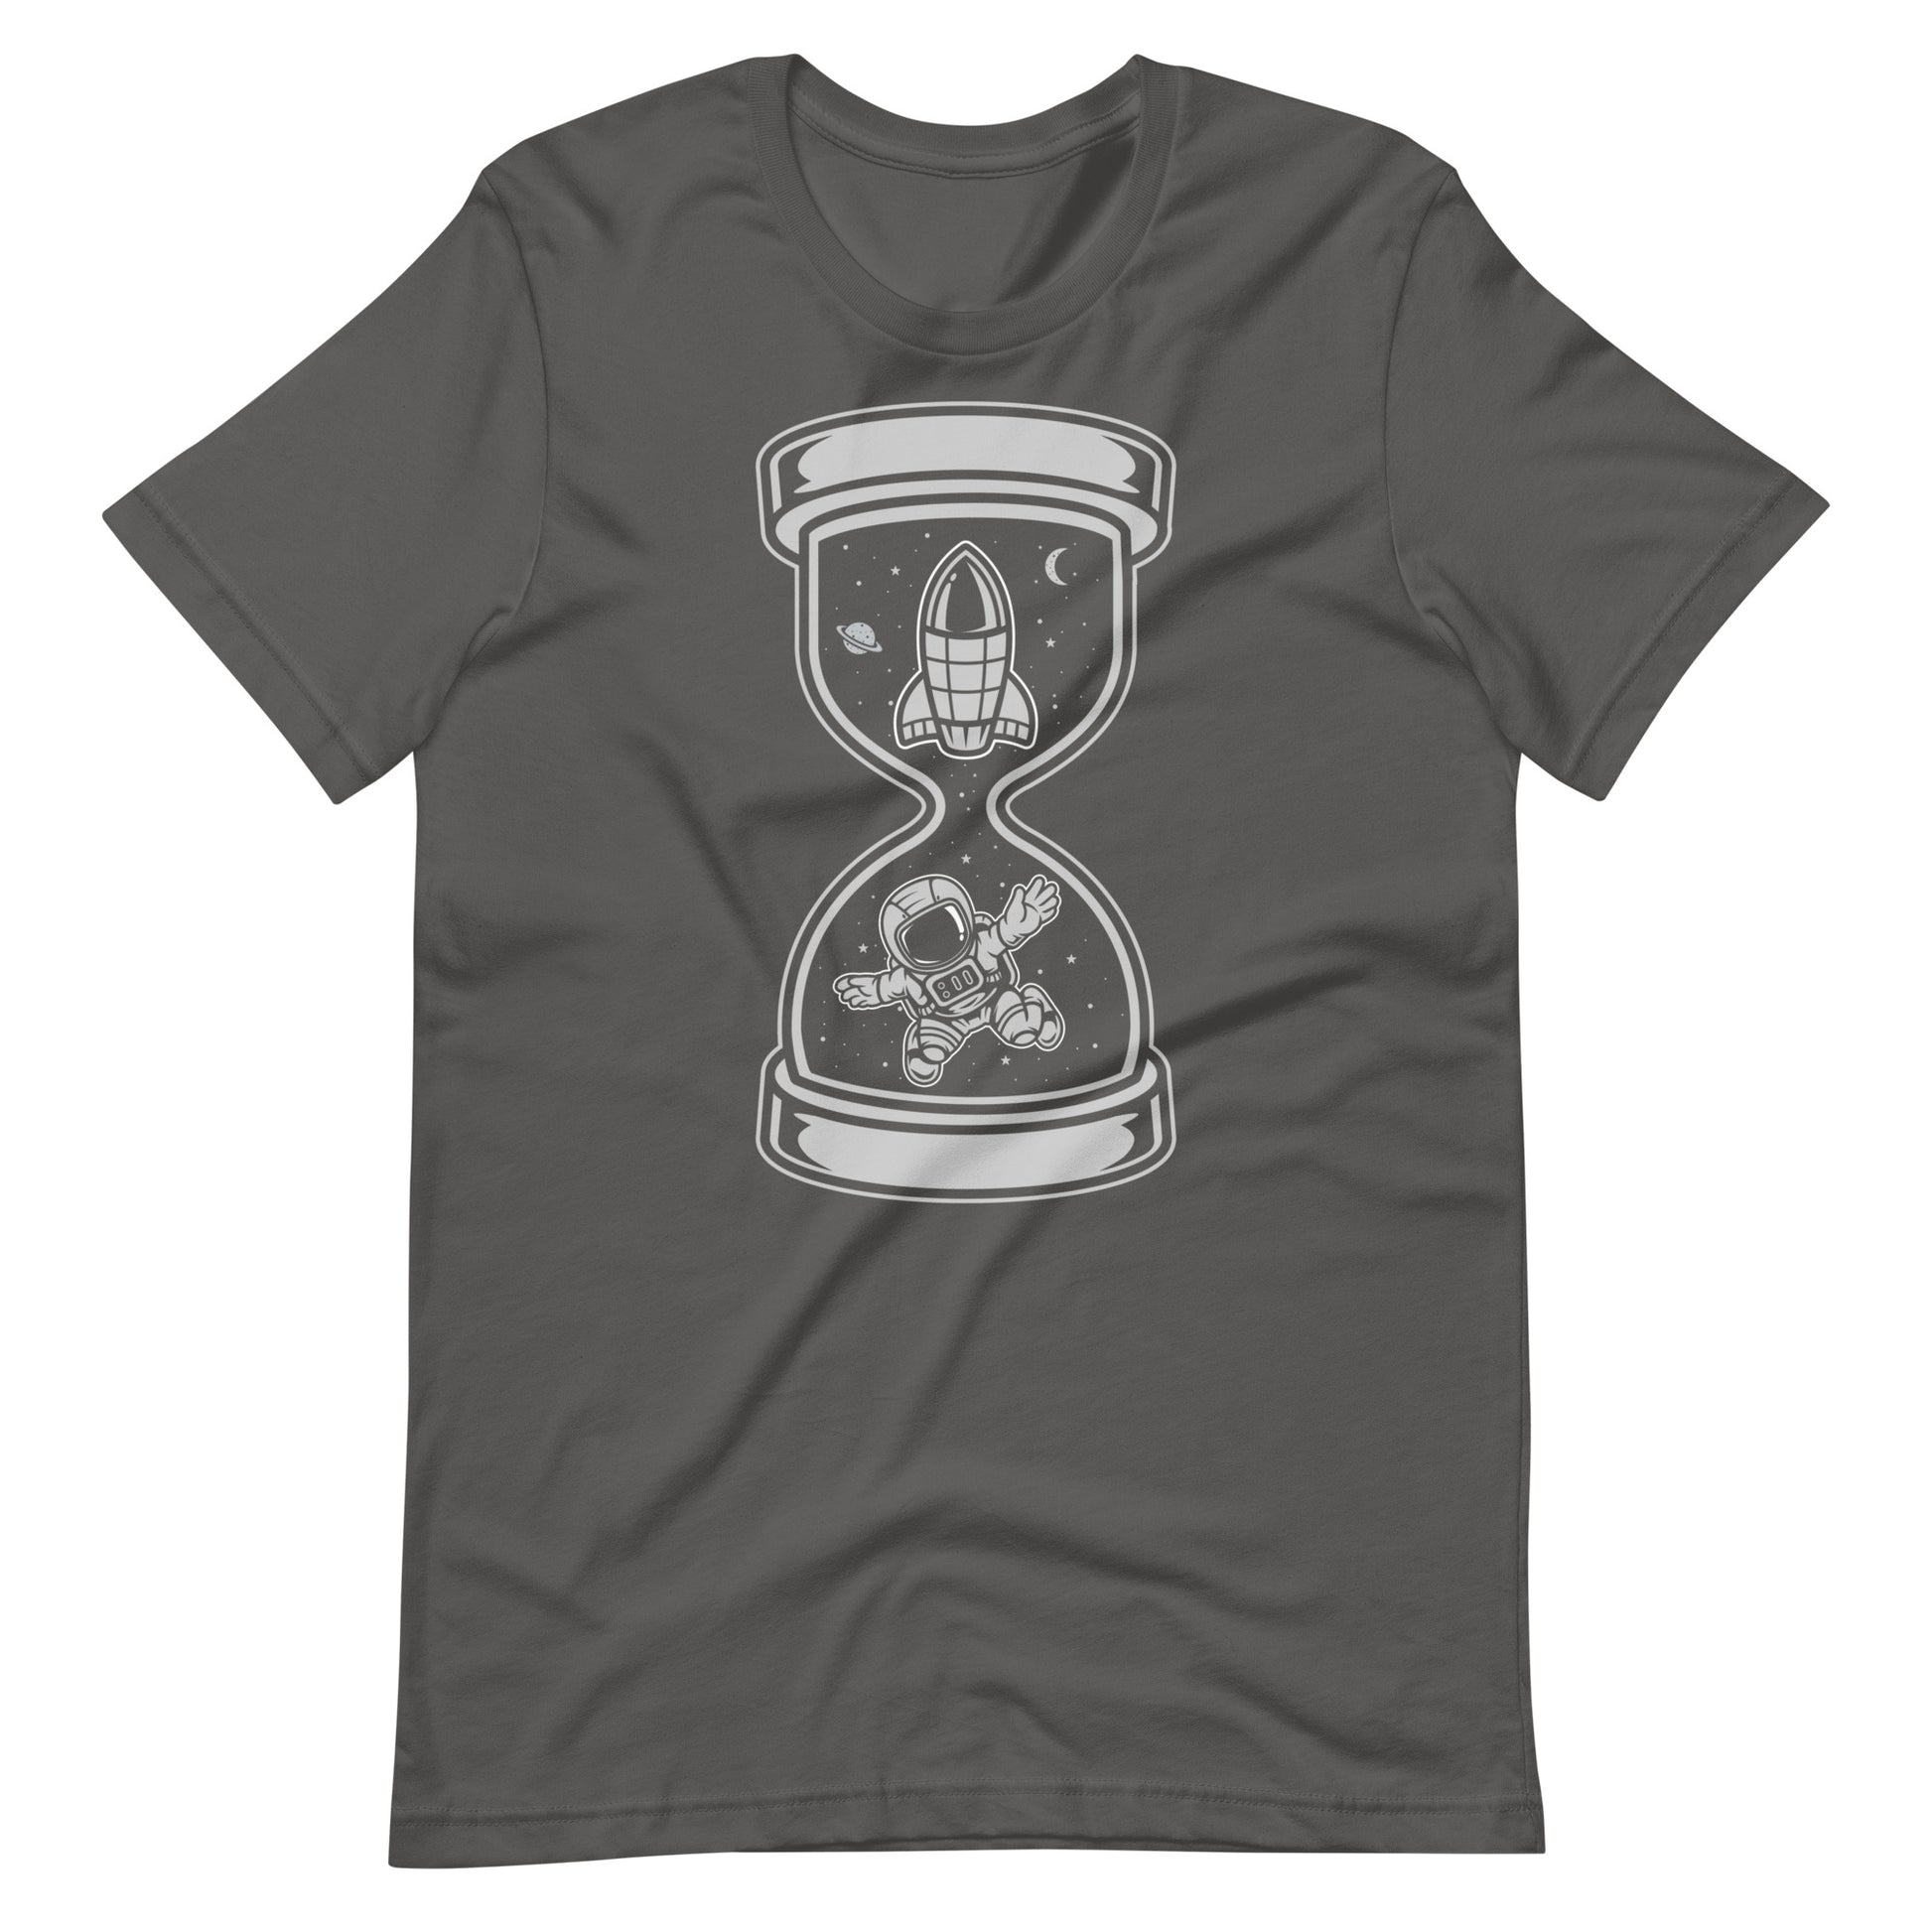 Astronaut Time - Men's t-shirt - Asphalt Front